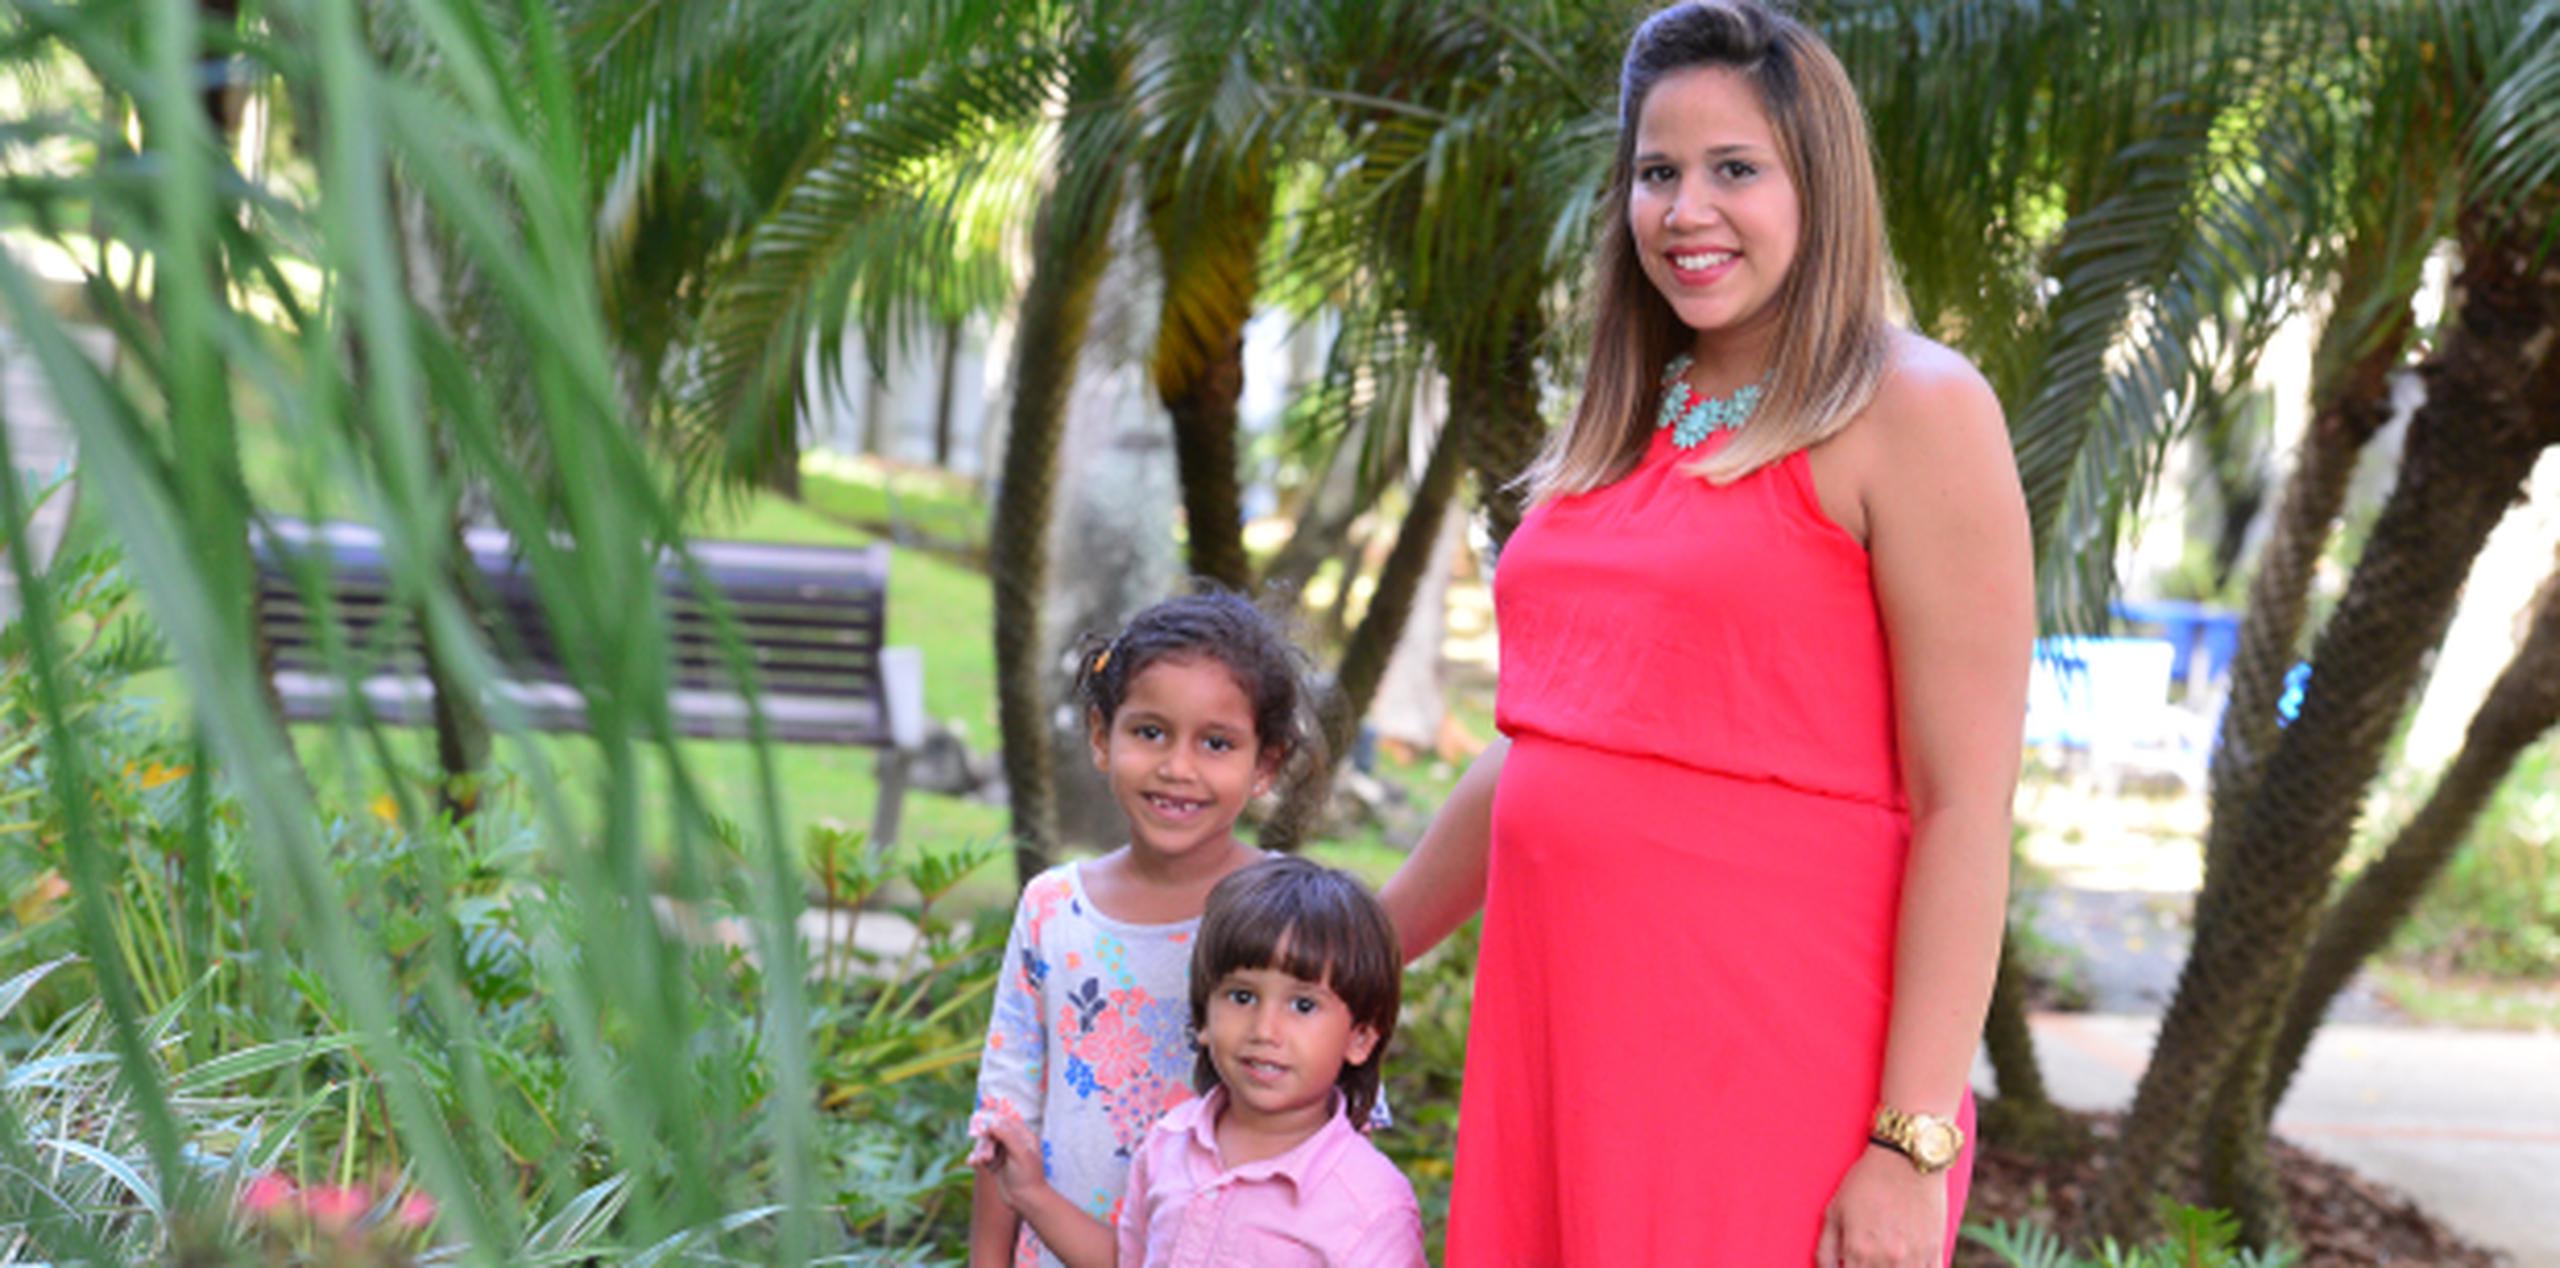 Para Santos, ser madre es un privilegio que se recibe con humildad y se lleva con intensidad.  (LUIS.ALCALADELOLMO@GFRMEDIA.COM)